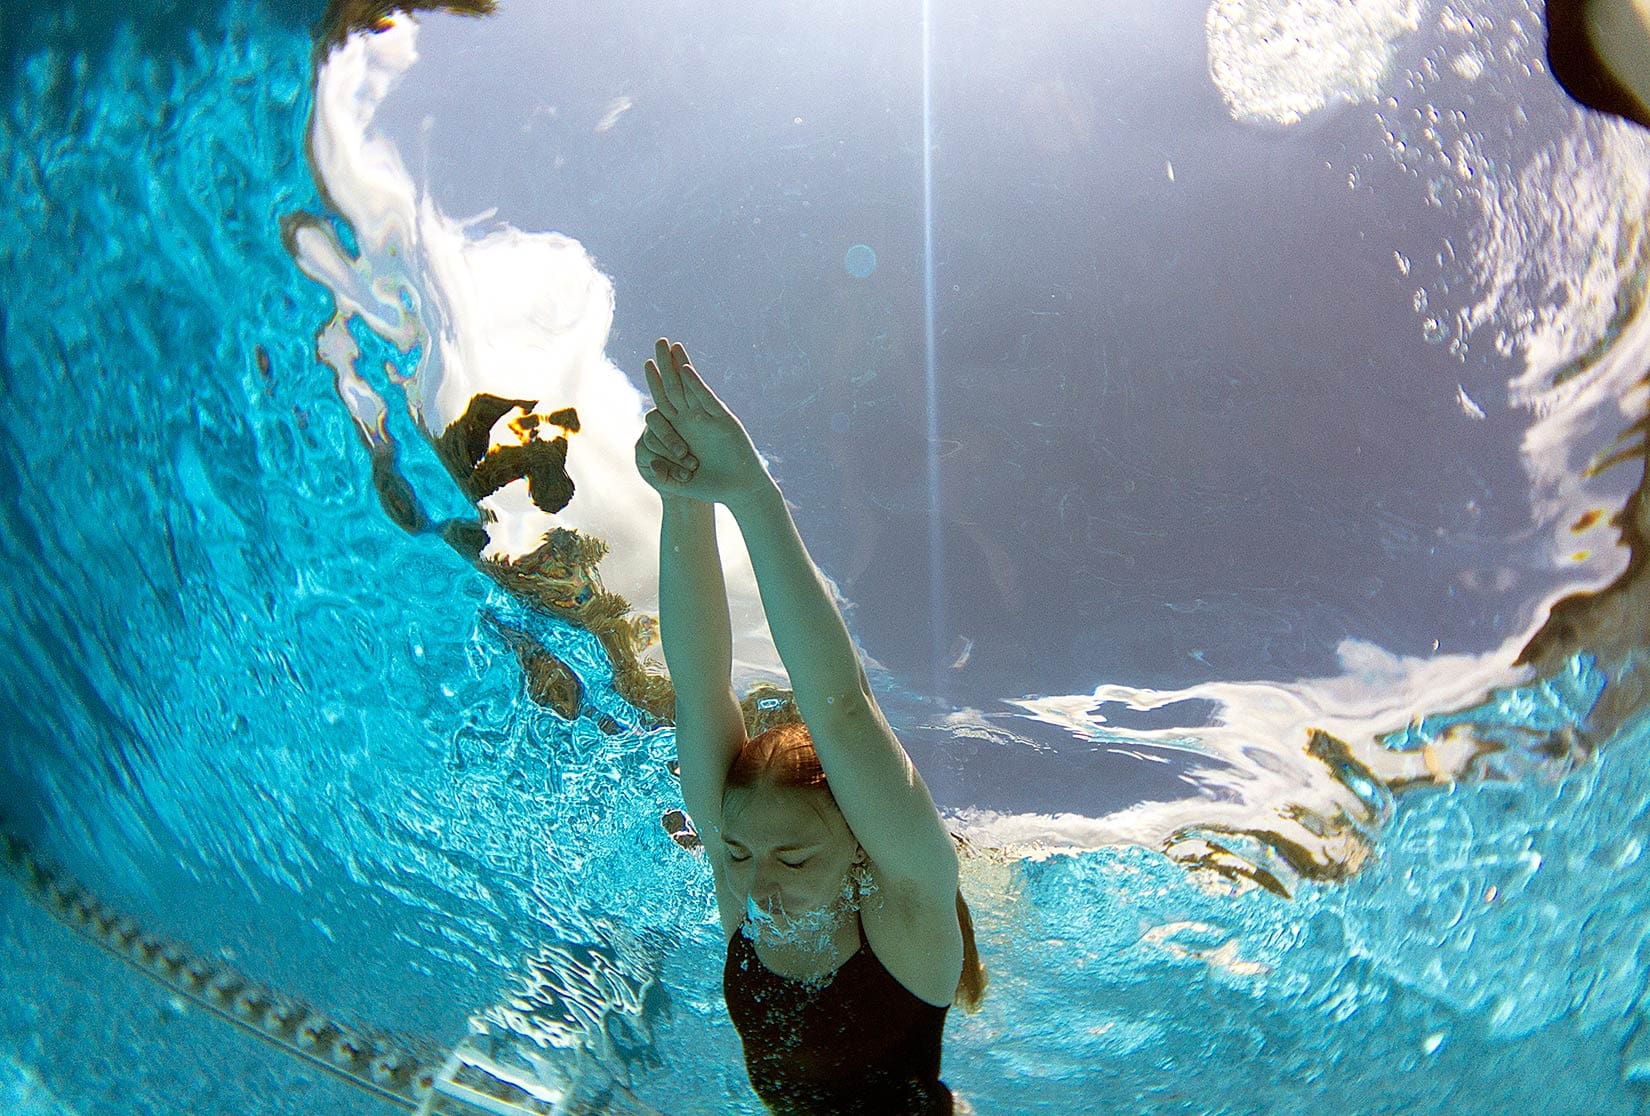 underwater iPhone photography